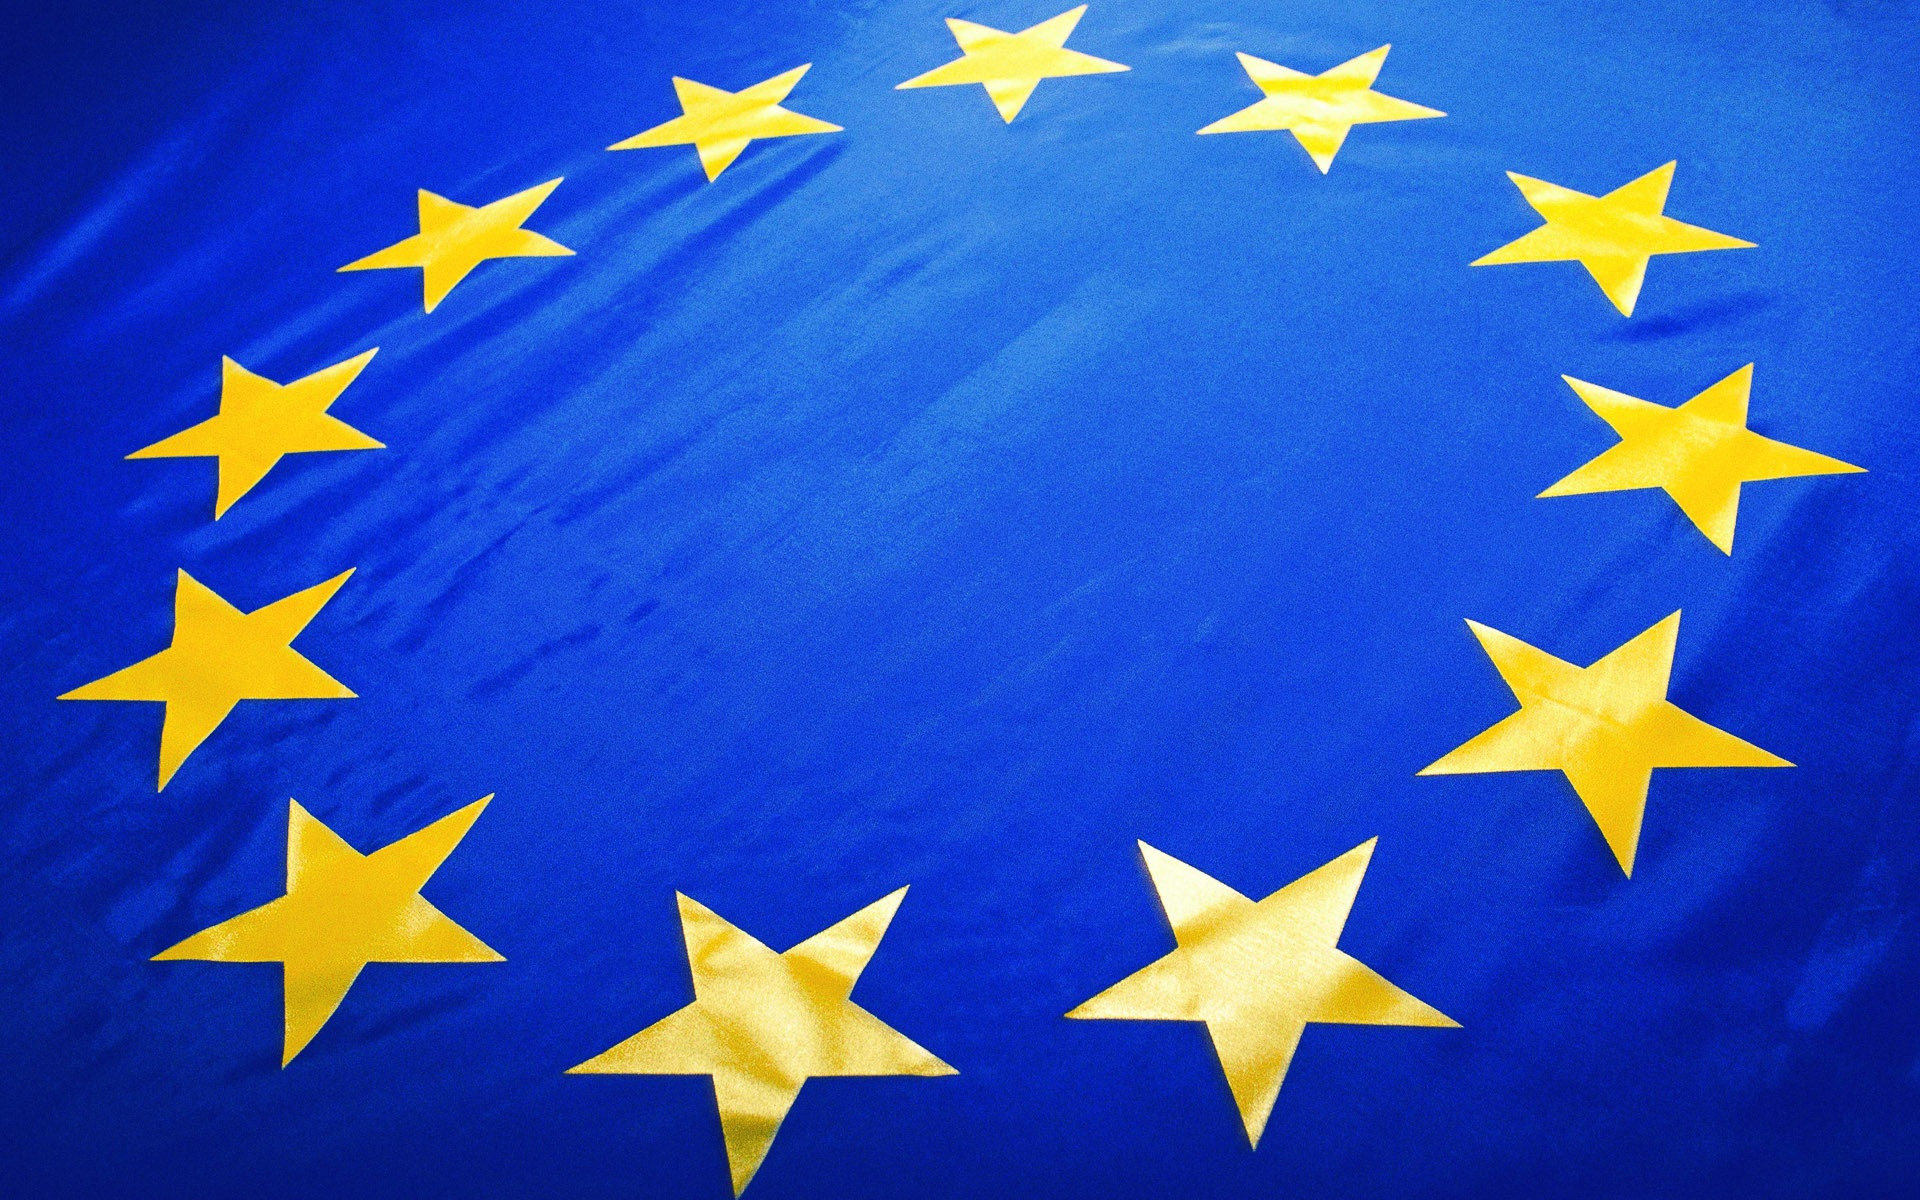 4 κρίσιμοι πολιτικοί στόχοι αναδύονται για την Ευρώπη